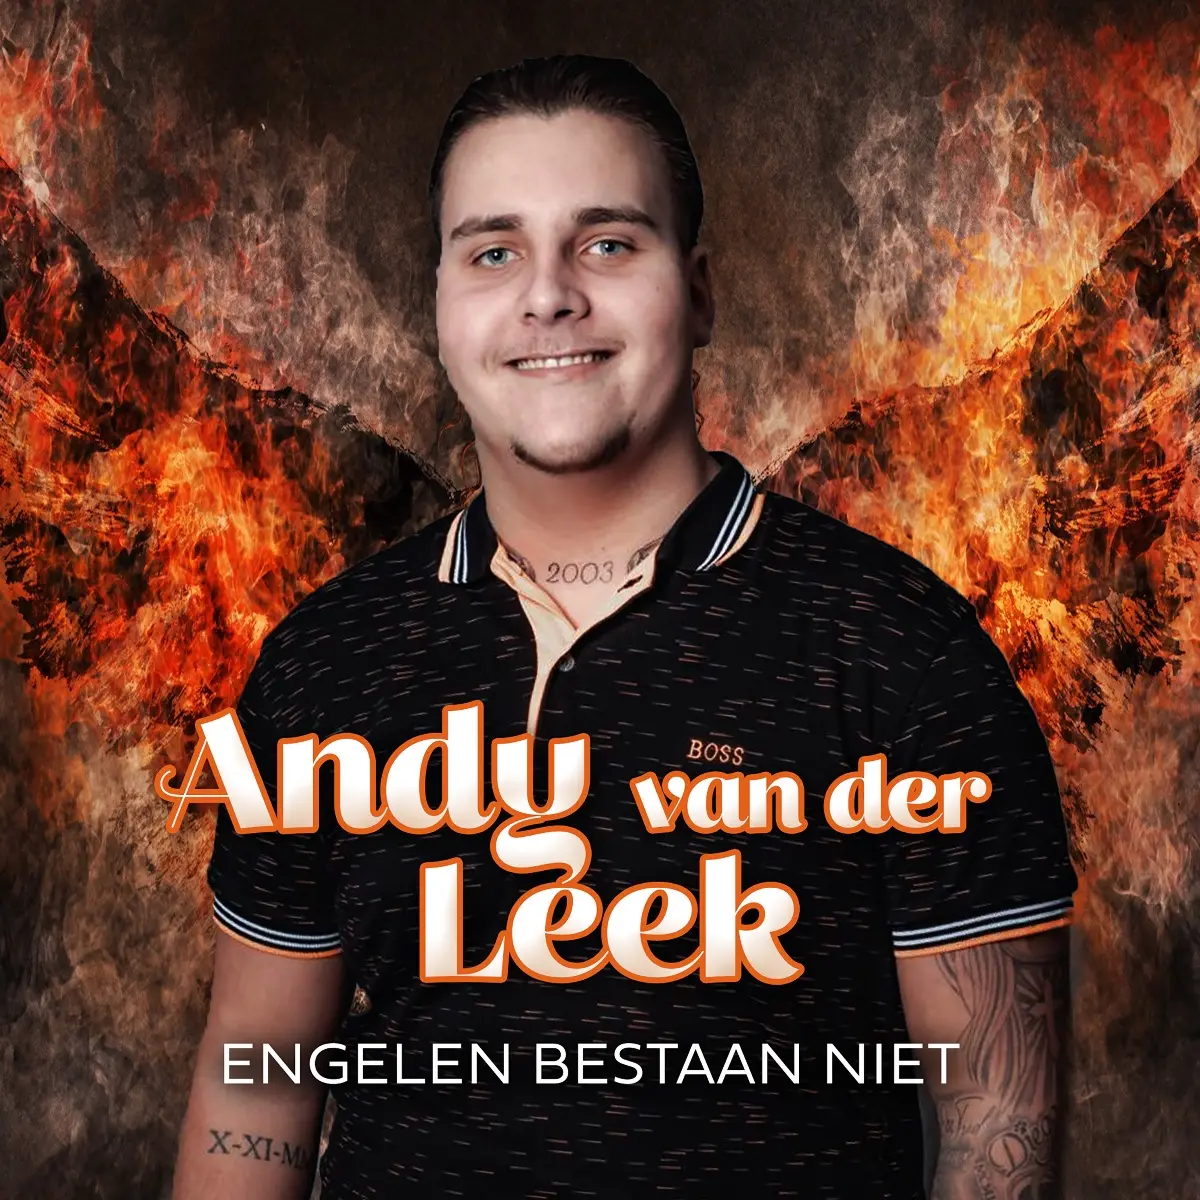 Andy van der Leek engelen bestaan niet